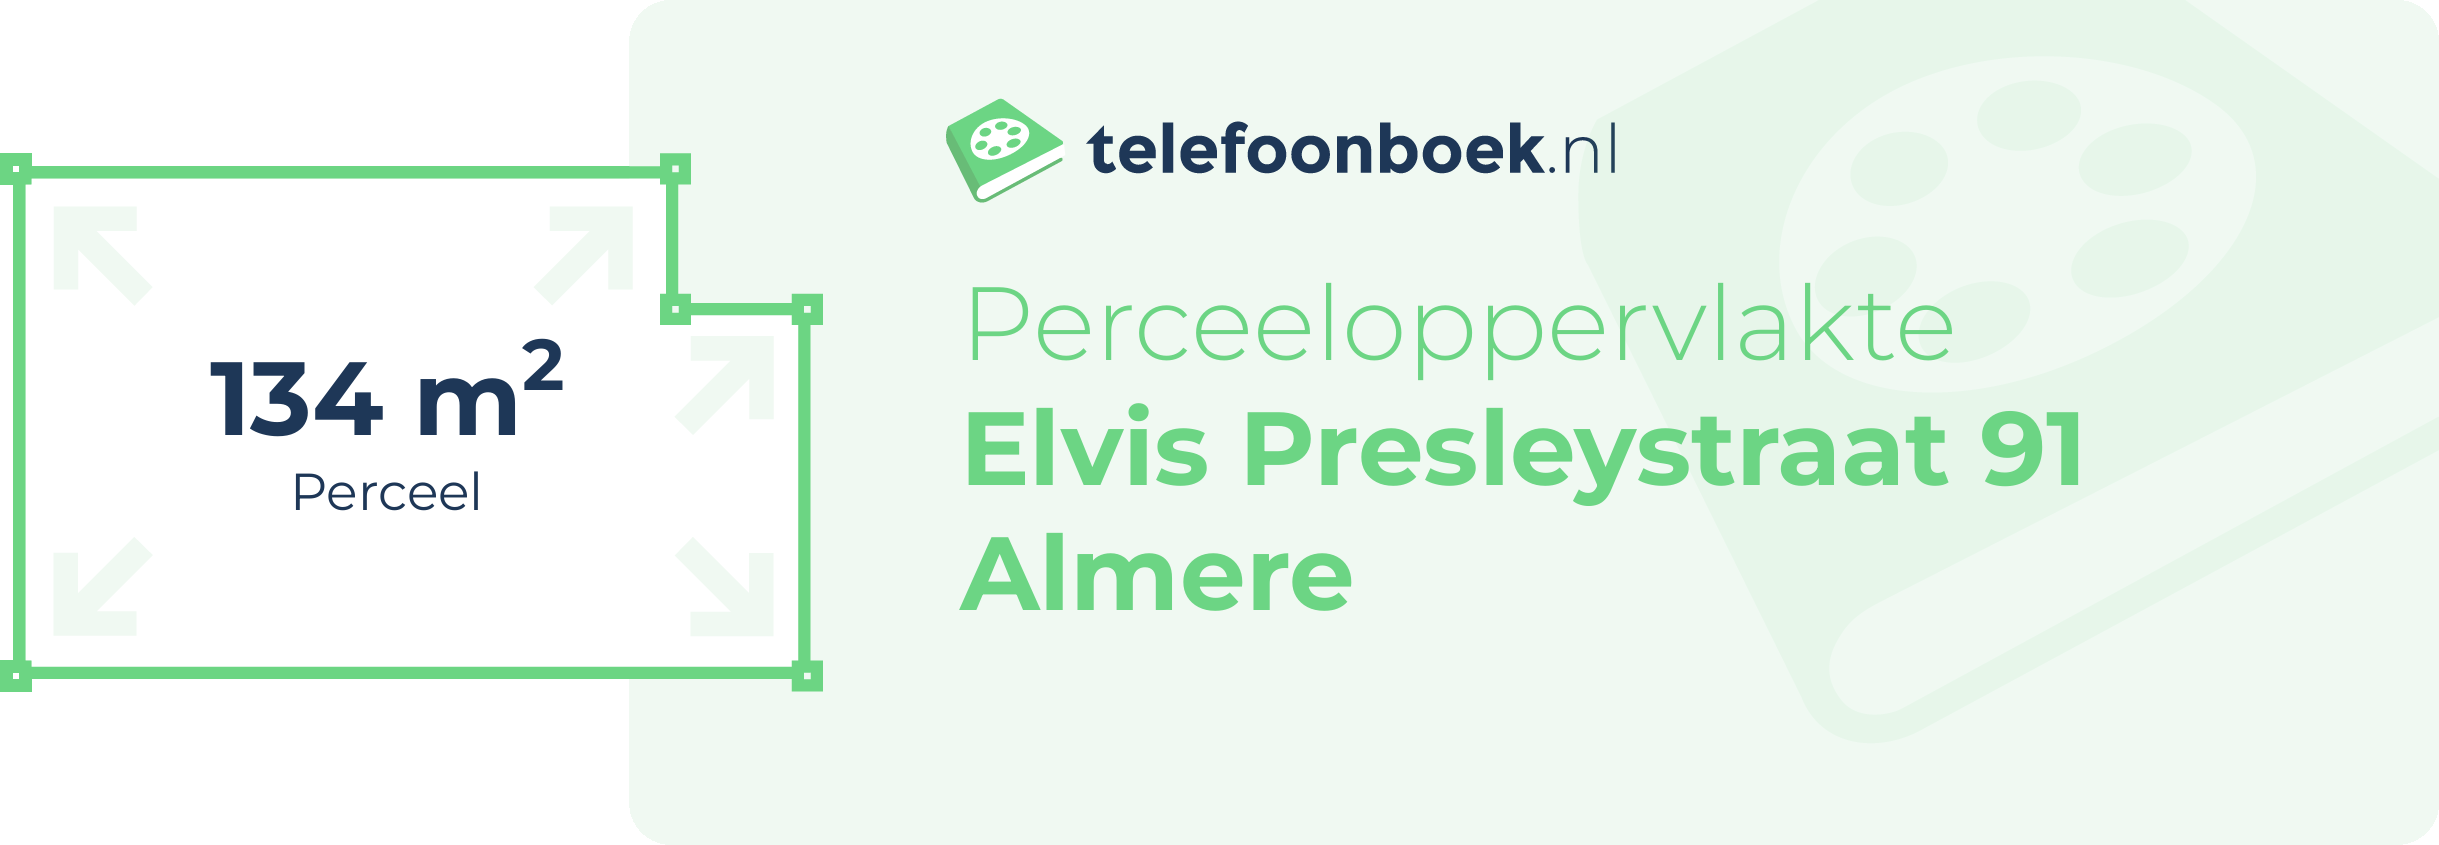 Perceeloppervlakte Elvis Presleystraat 91 Almere